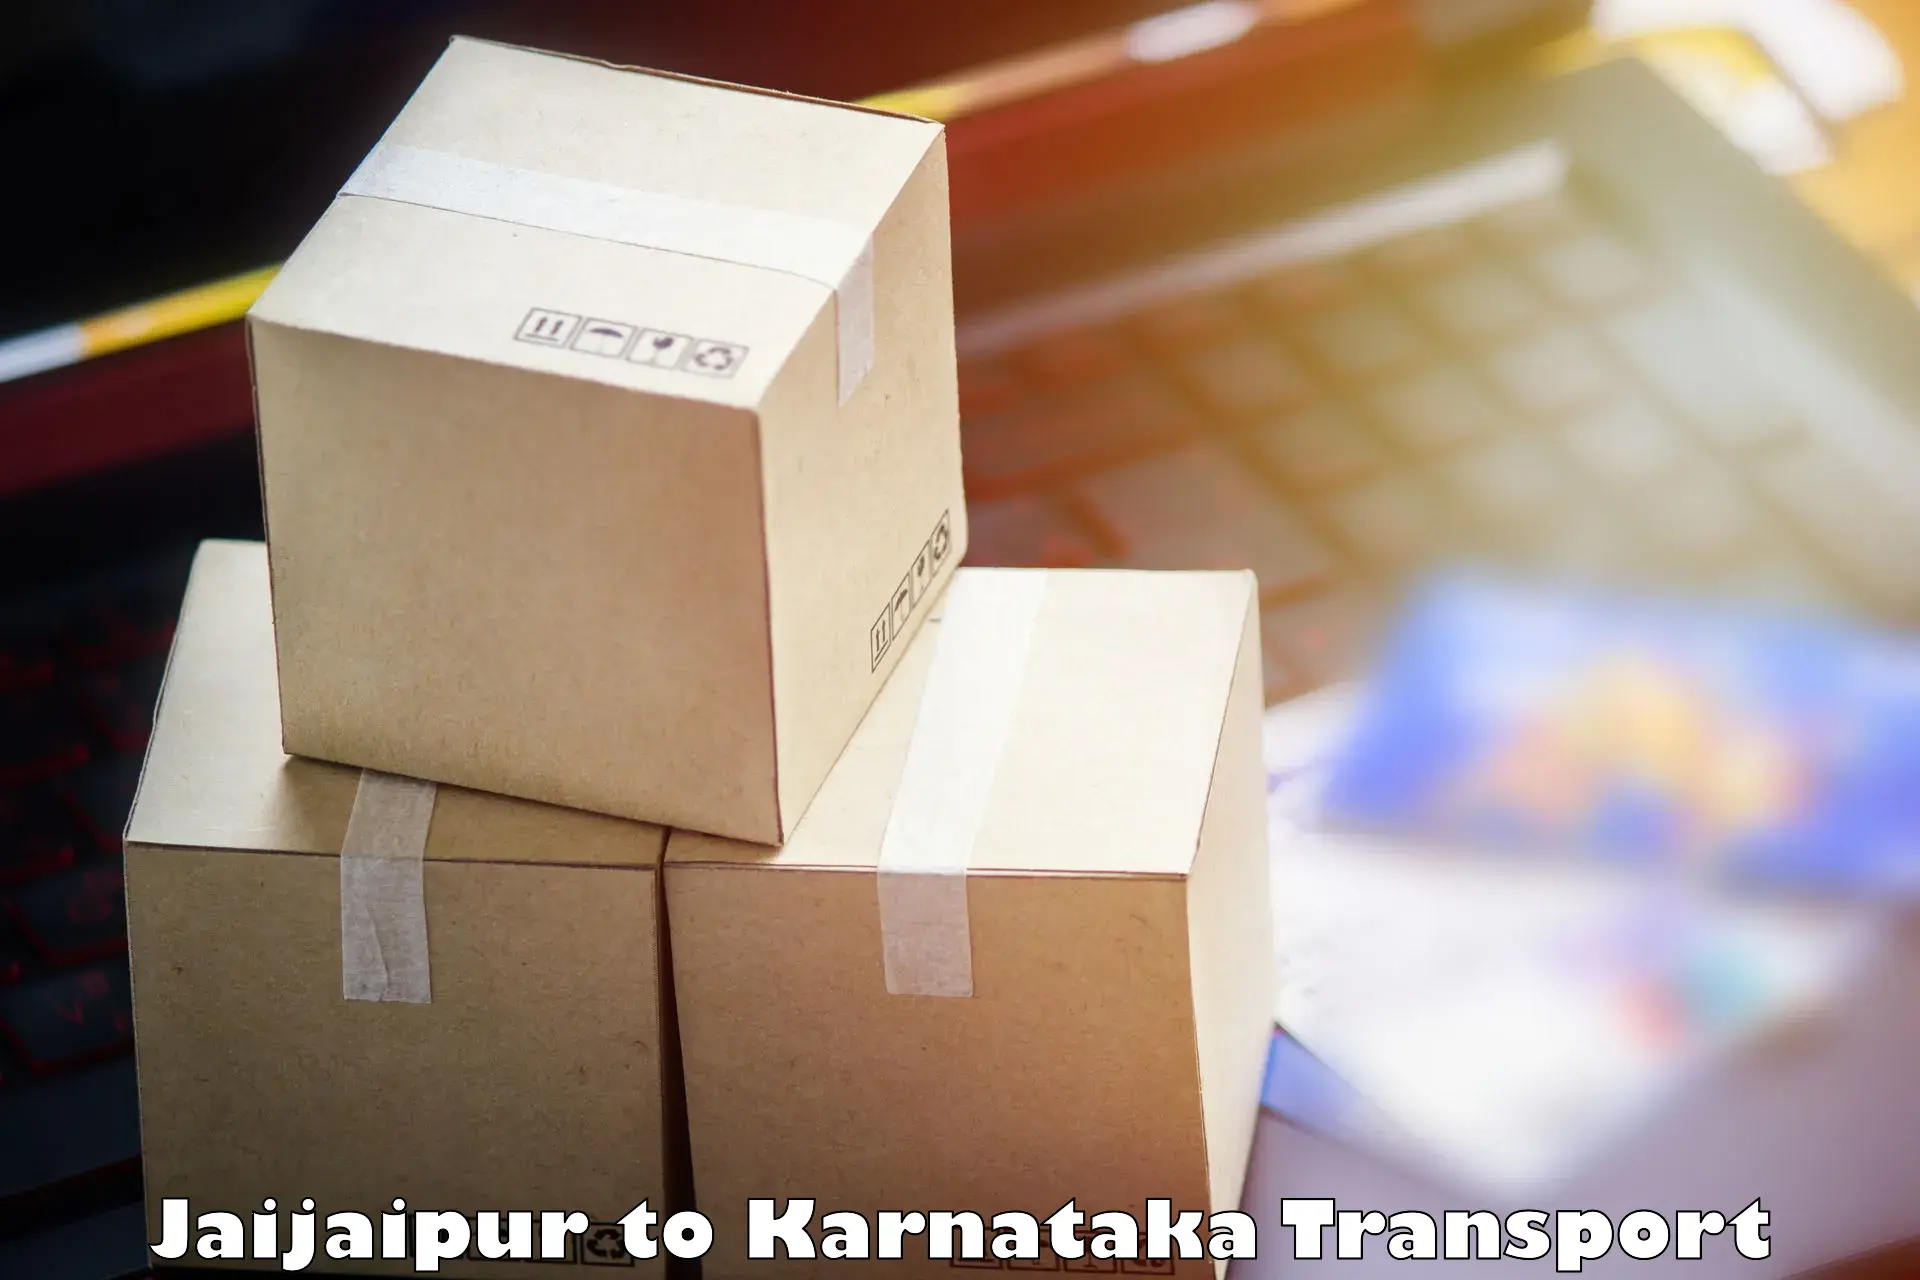 Online transport Jaijaipur to Munavalli